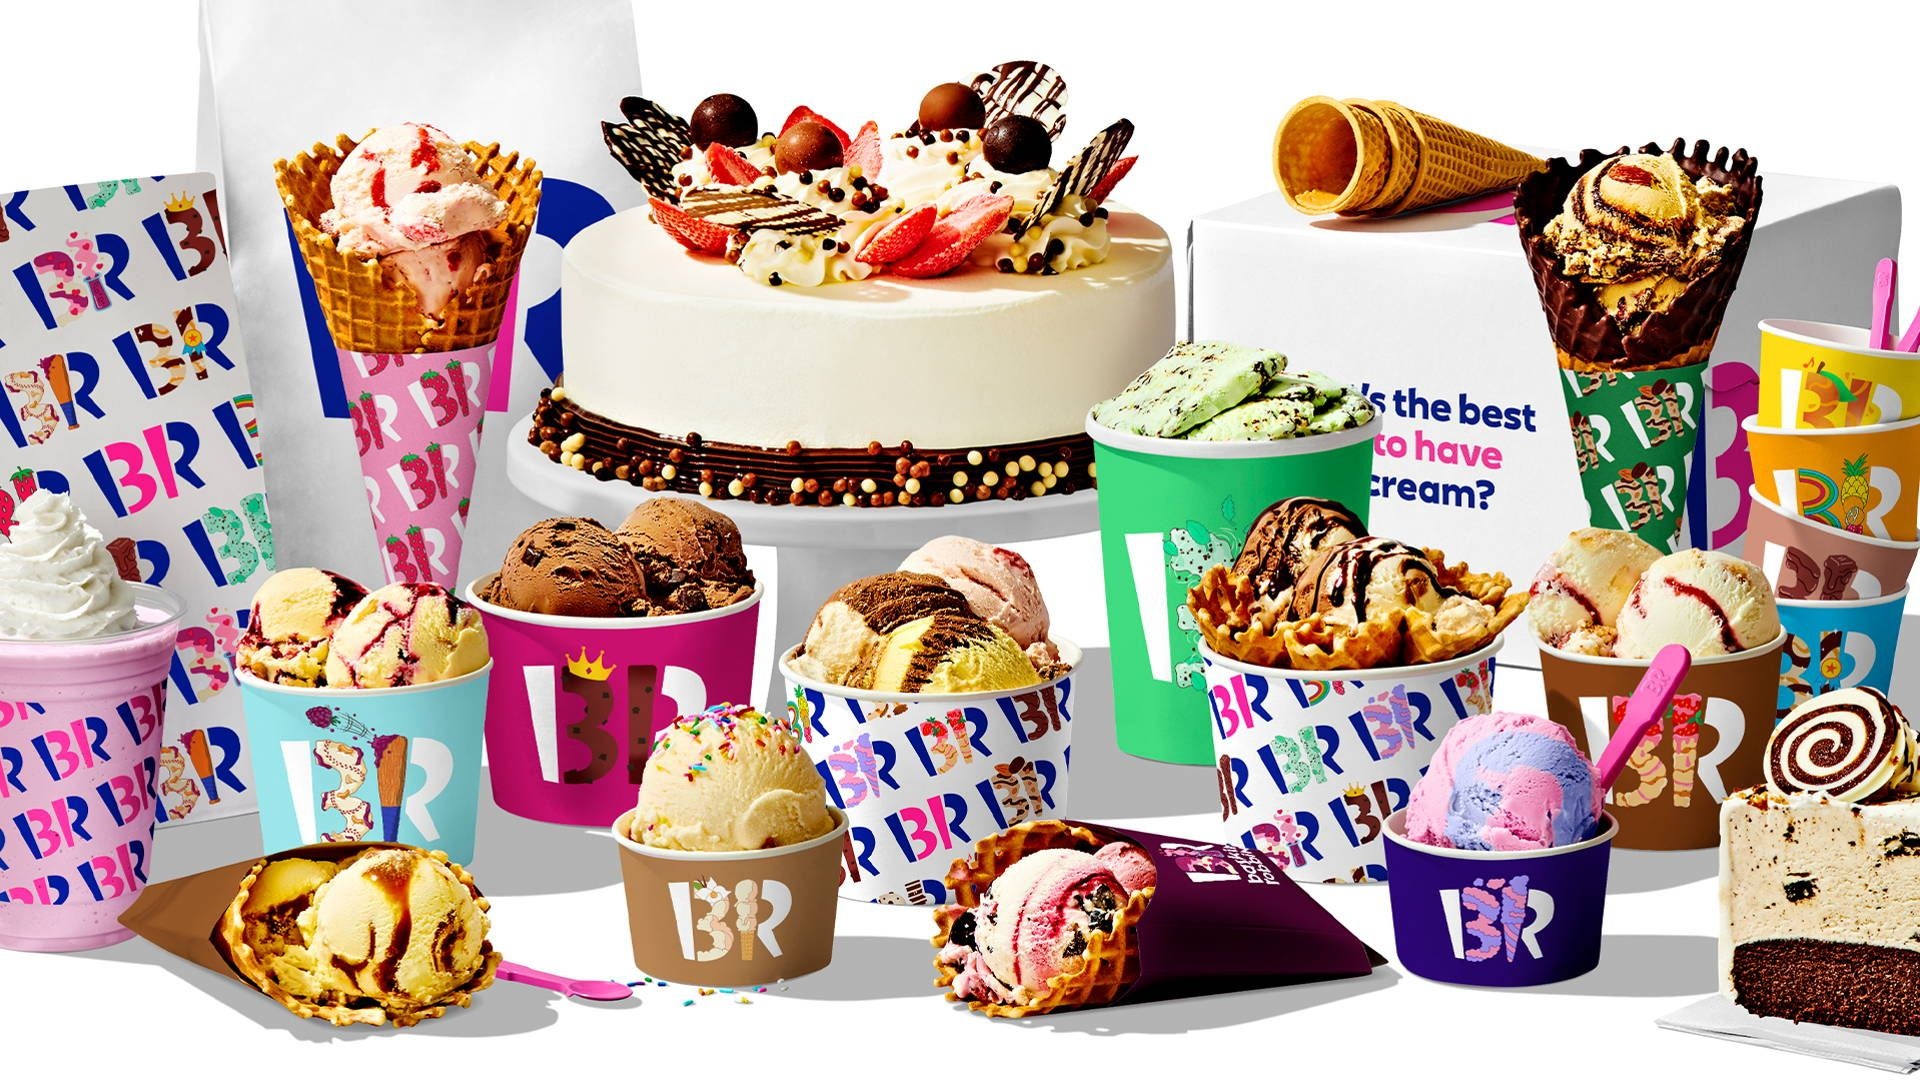 Baskin Robbins: Pralines 'n Cream, Jamoca Almond Fudge, Frozen desserts called “BRight Choices”. 1920x1080 Full HD Wallpaper.